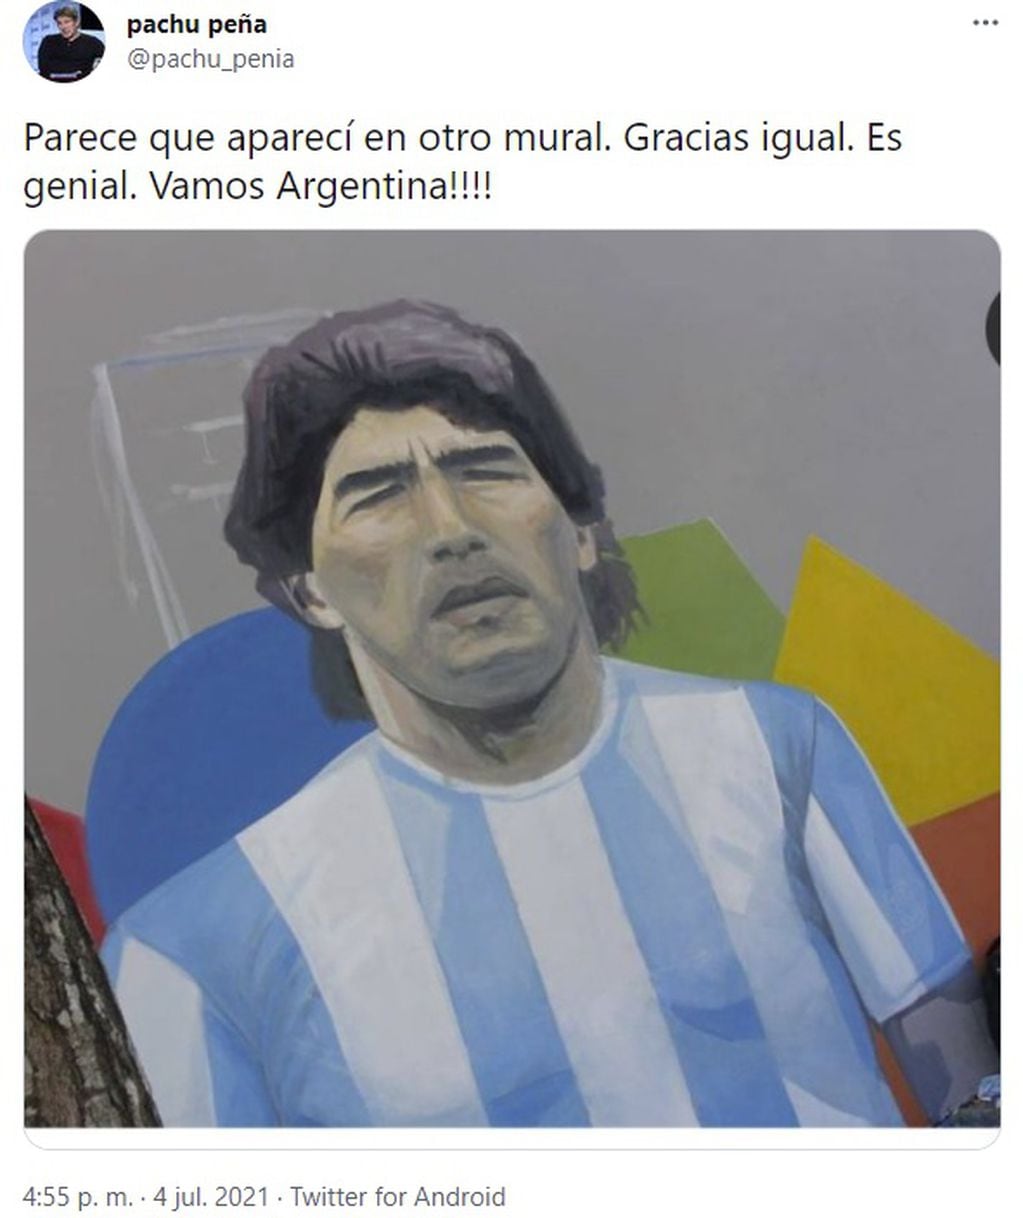 Los seguidores de Pachu se divirtieron al ver la comparación con el retrato de Diego.